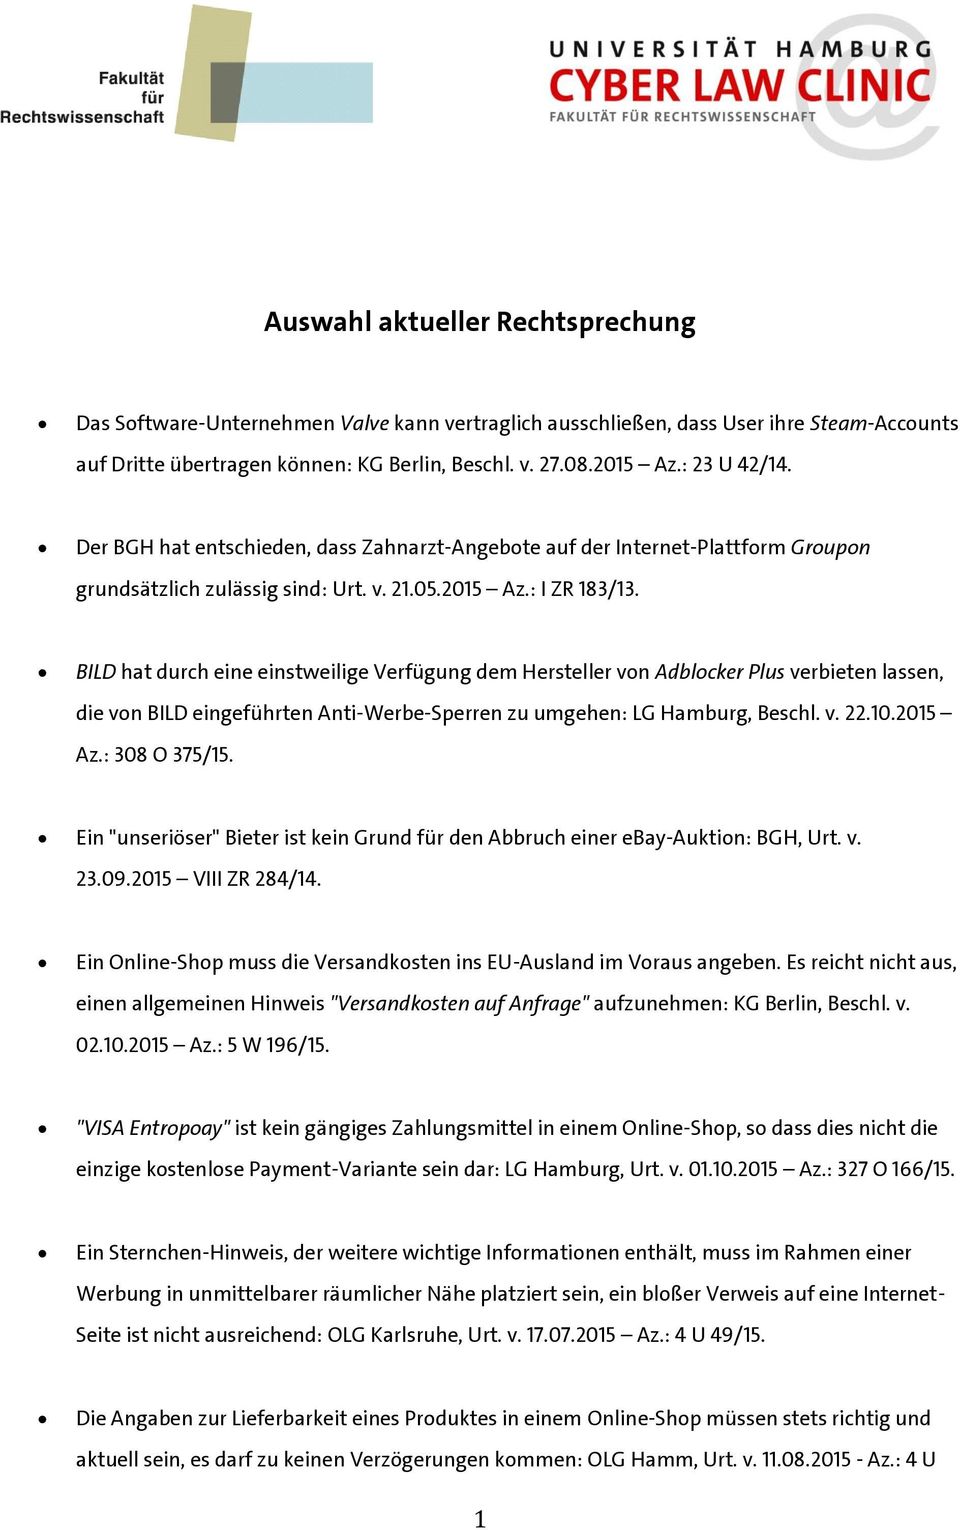 BILD hat durch eine einstweilige Verfügung dem Hersteller von Adblocker Plus verbieten lassen, die von BILD eingeführten Anti-Werbe-Sperren zu umgehen: LG Hamburg, Beschl. v. 22.10.2015 Az.